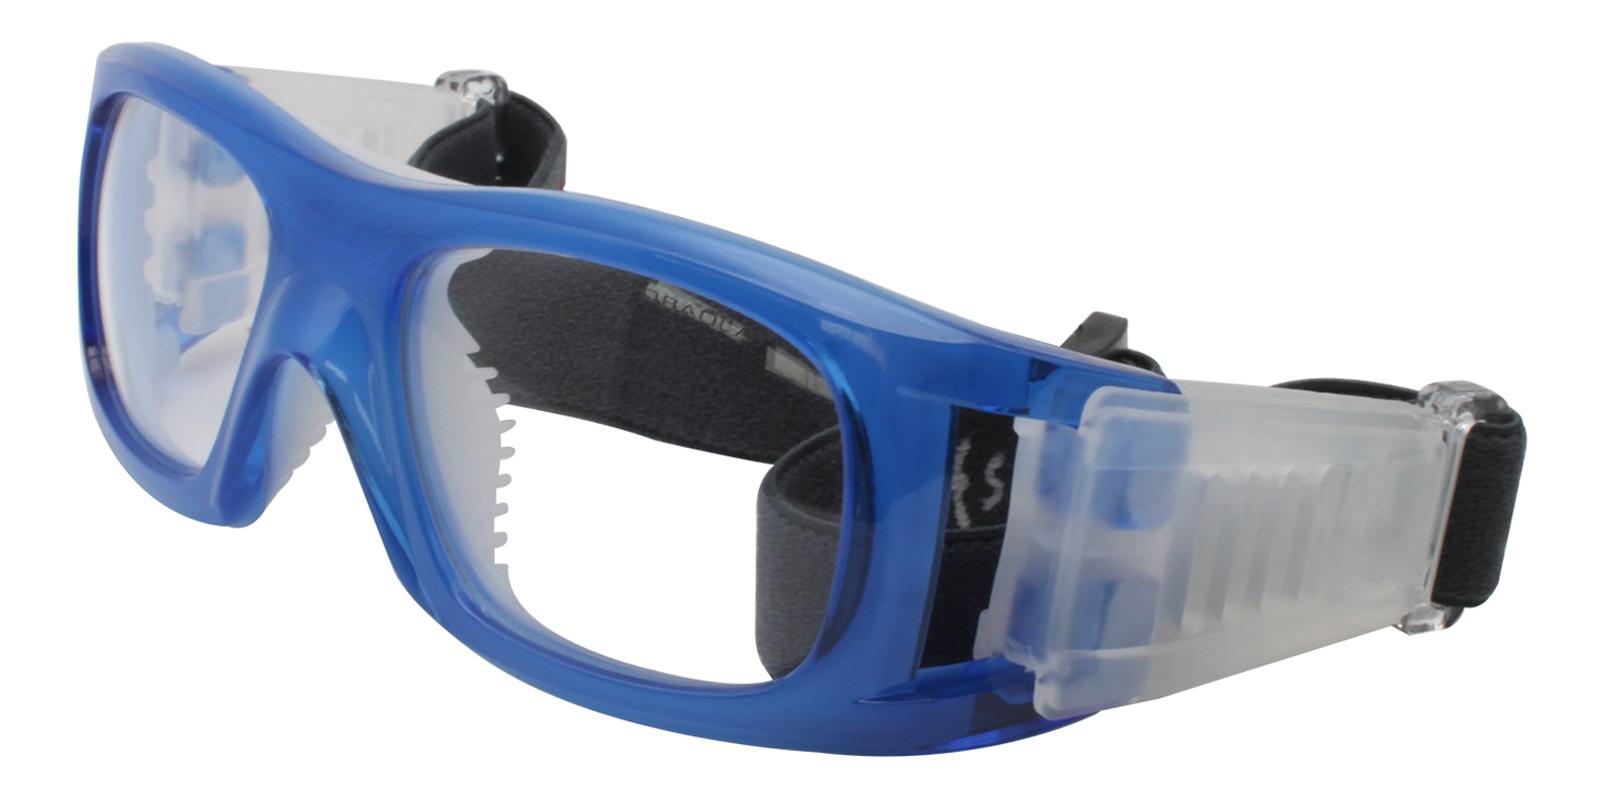 Christopher Blue Plastic NosePads , SportsGlasses Frames from ABBE Glasses